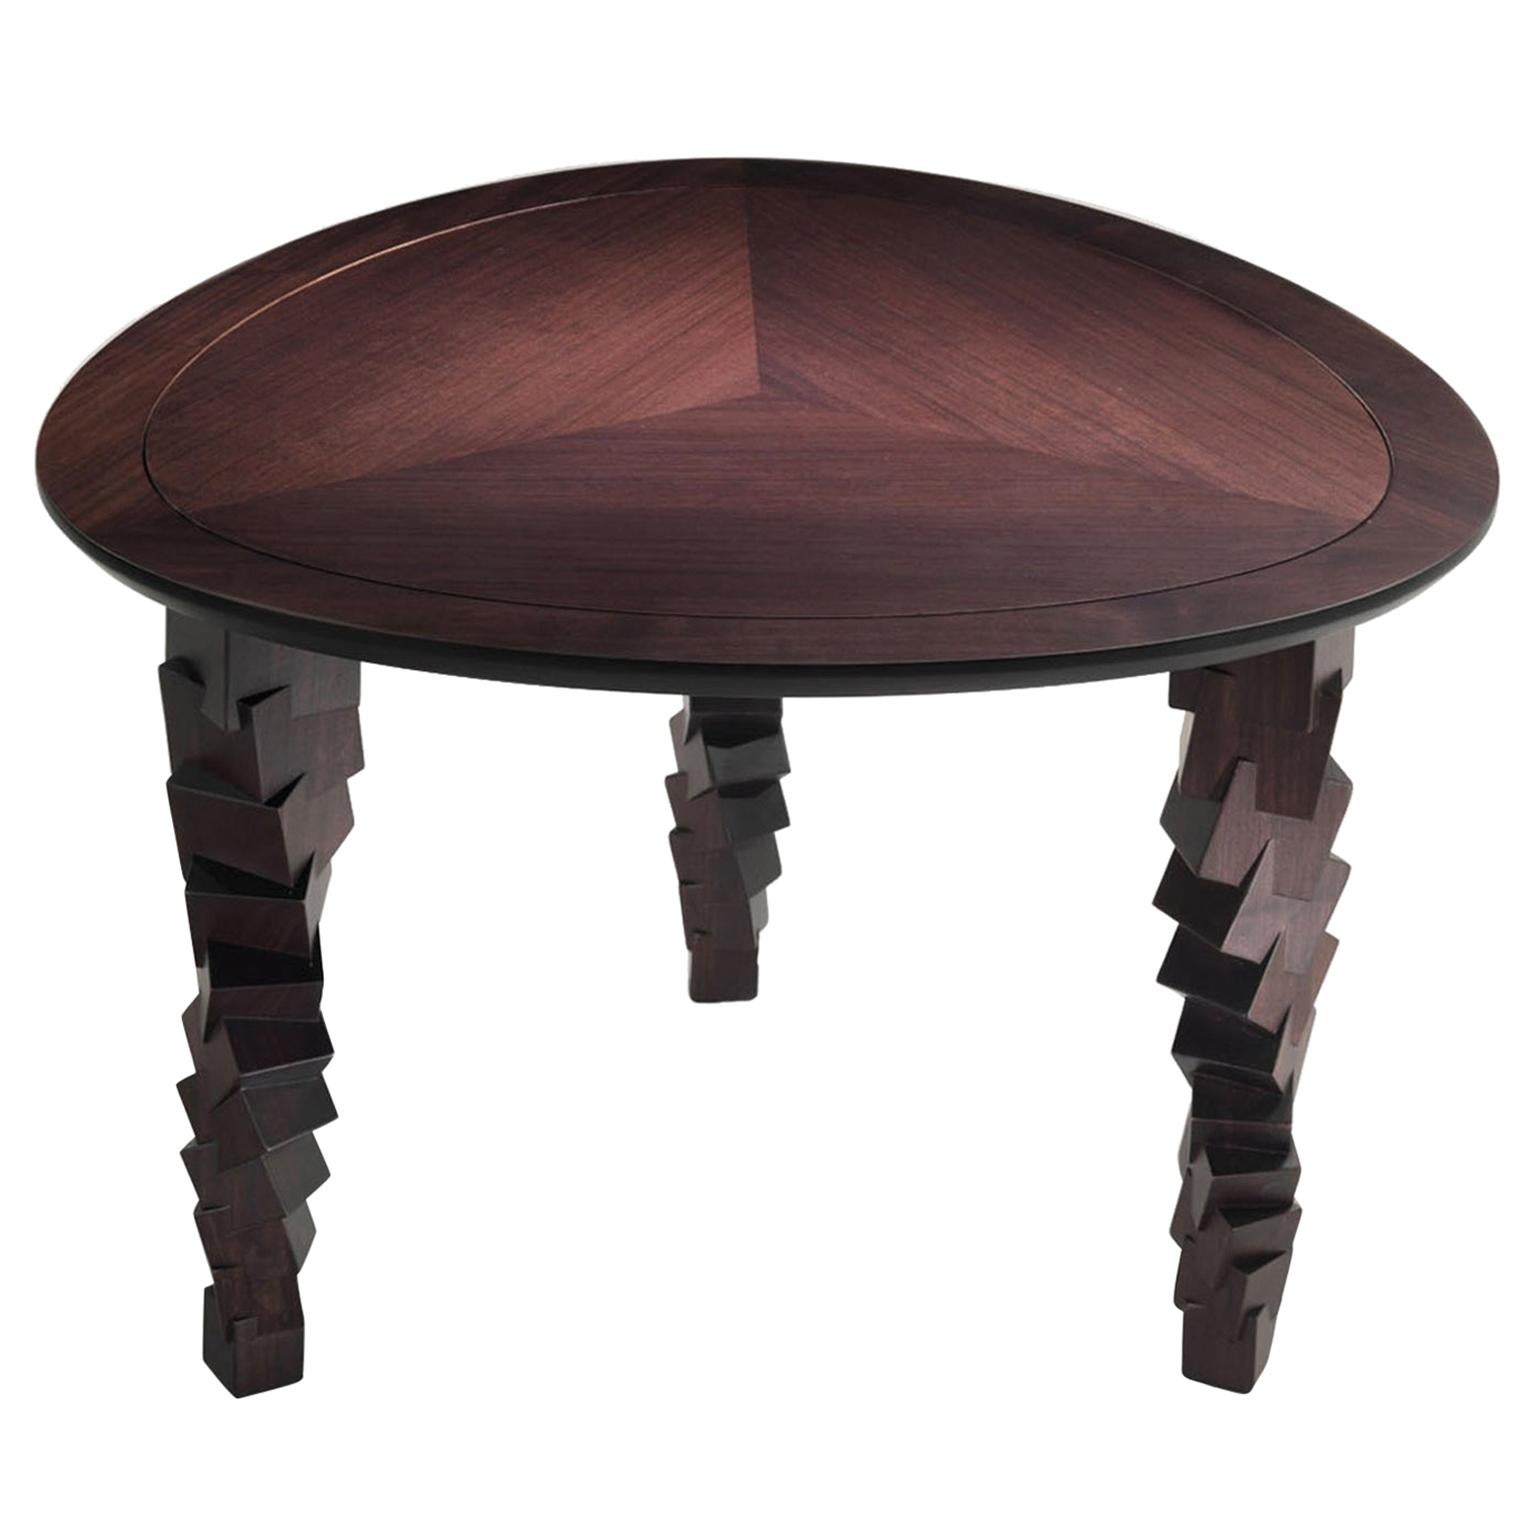 LUI/4 Petite table en bois massif sculpté Brown avec plateau marqueté et pieds sculptés 